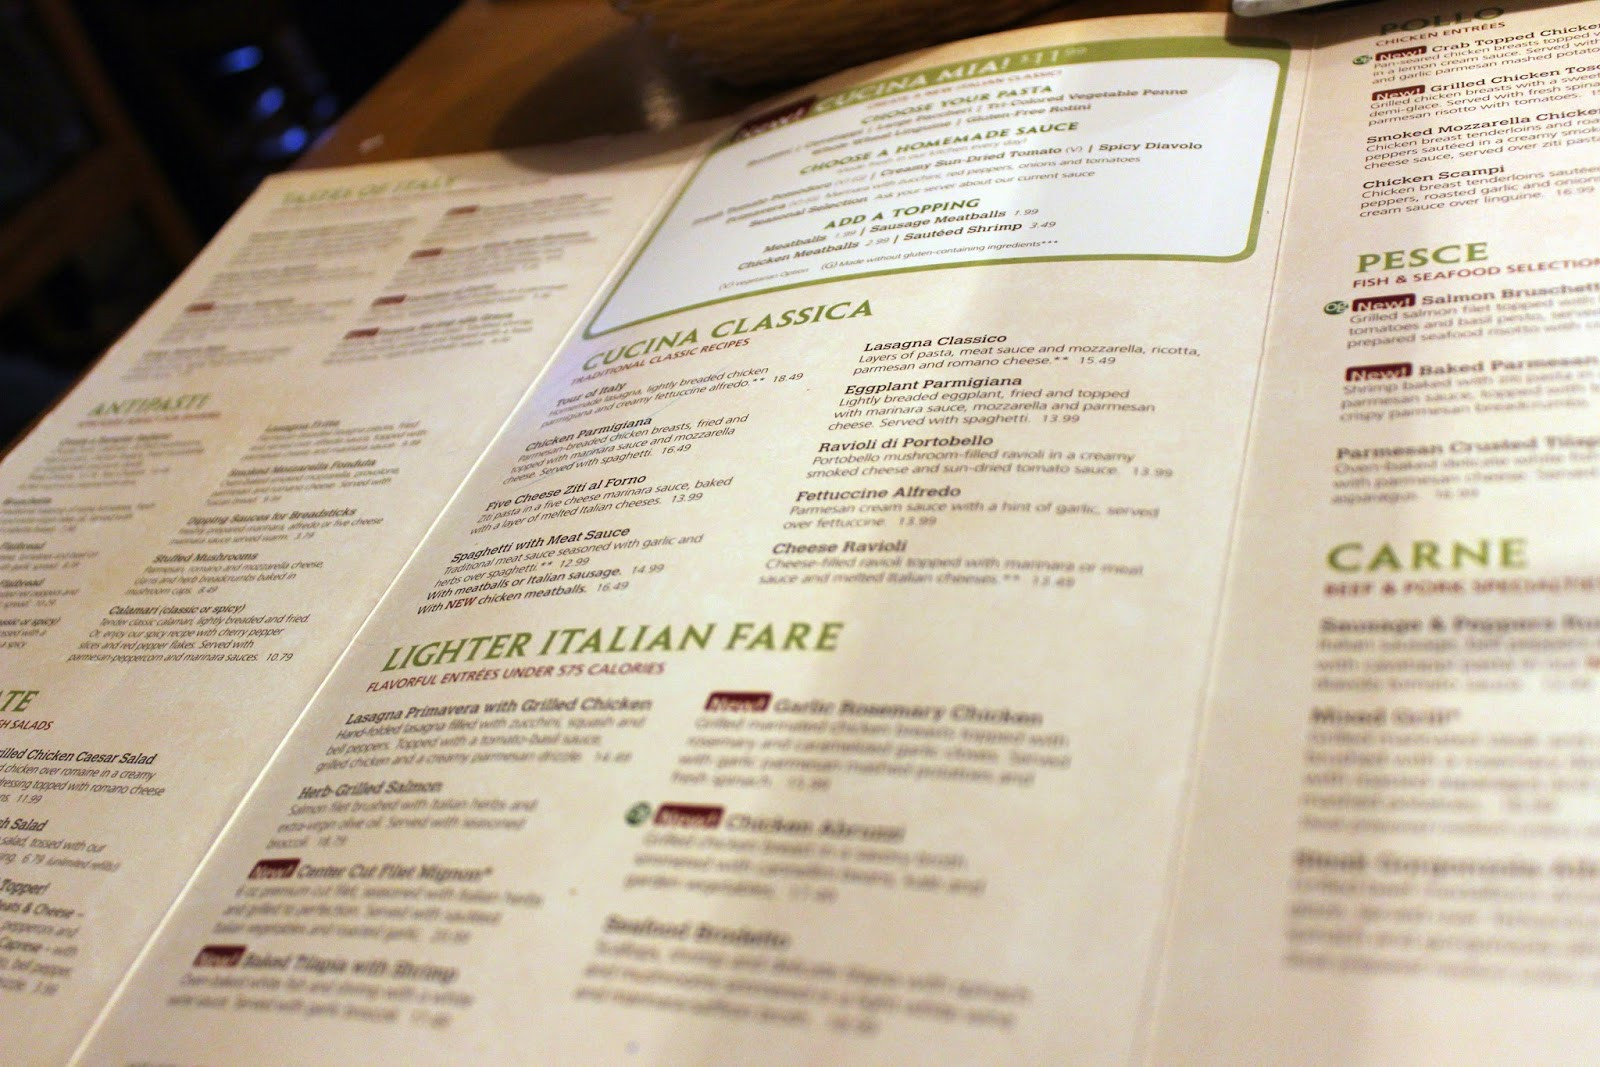 Olive Garden Menu Prices Dinner
 The 20 Best Ideas for Olive Garden Dinner Menu Best